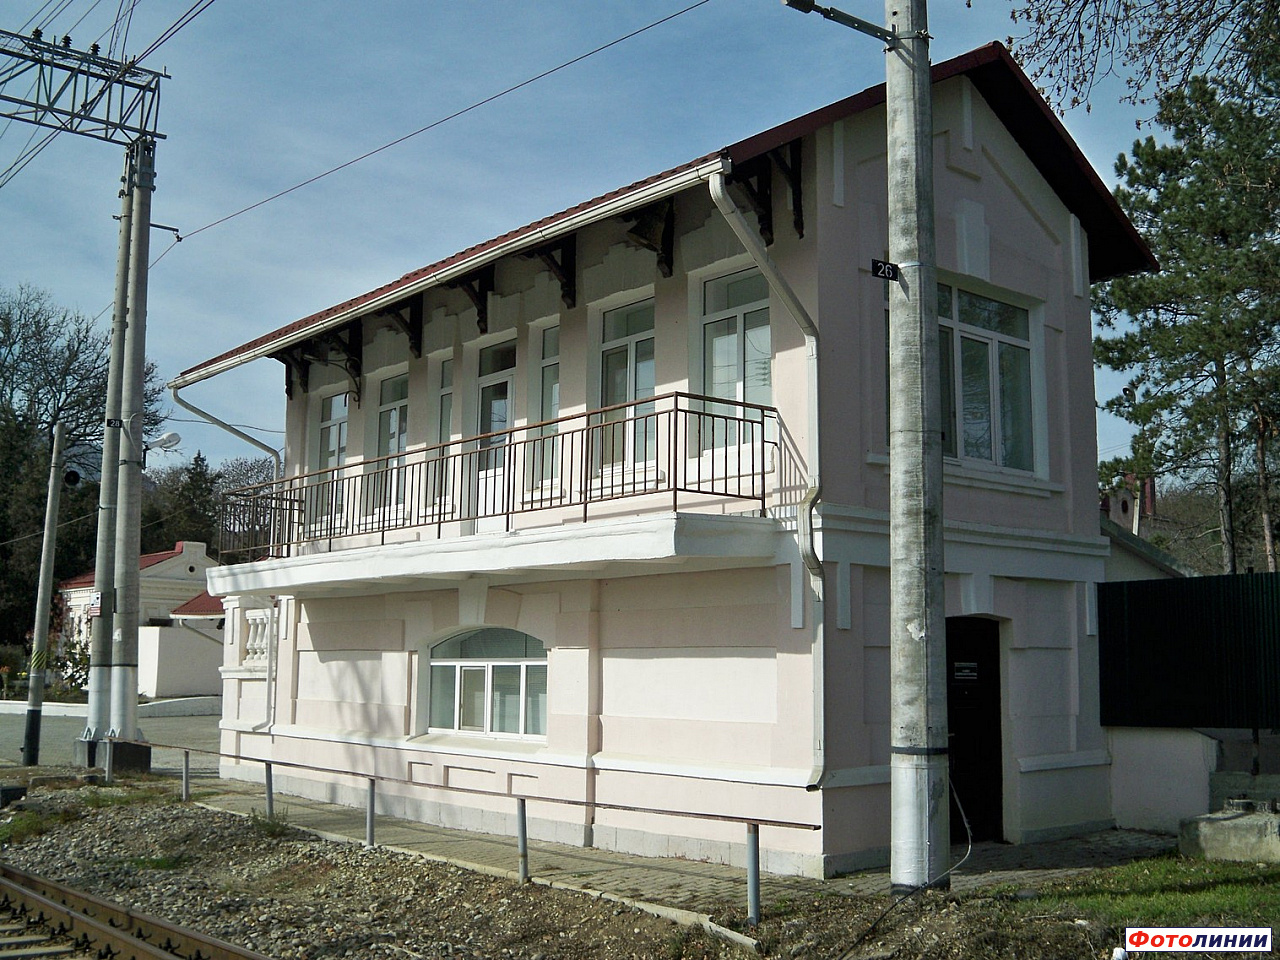 Здание на станции